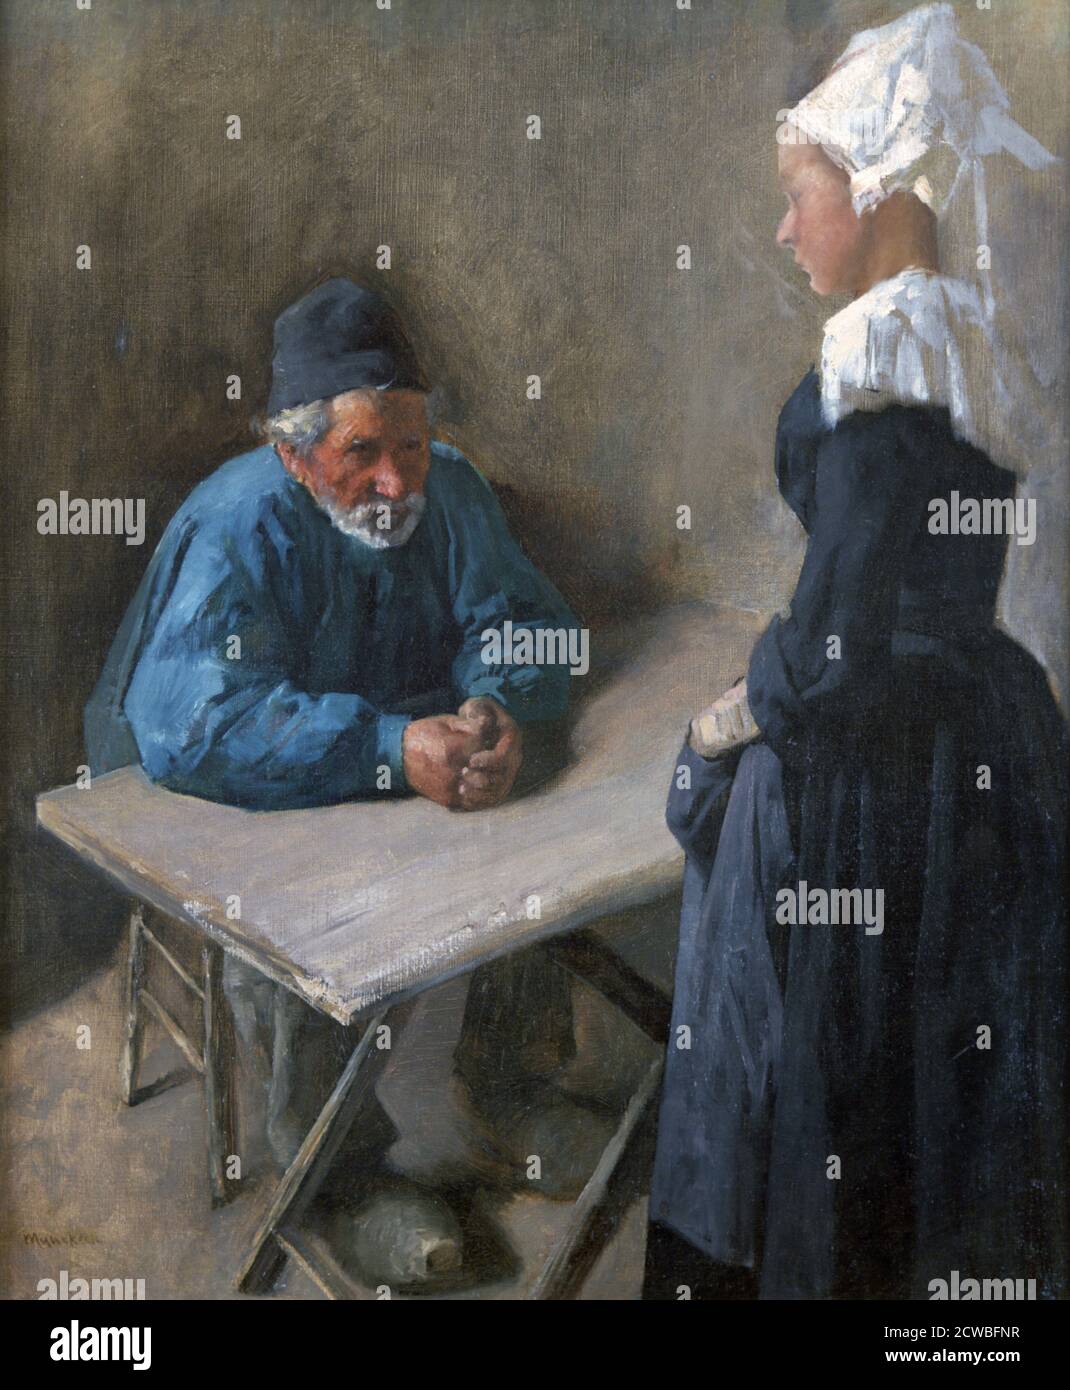 L'engagement du serviteur', c1864-1900. Artiste: Mihaly Munkacsy. Mihaly Munkacsy (1844-1900) est un peintre hongrois. Il a acquis une réputation internationale avec ses images de genre et ses peintures bibliques à grande échelle. Banque D'Images